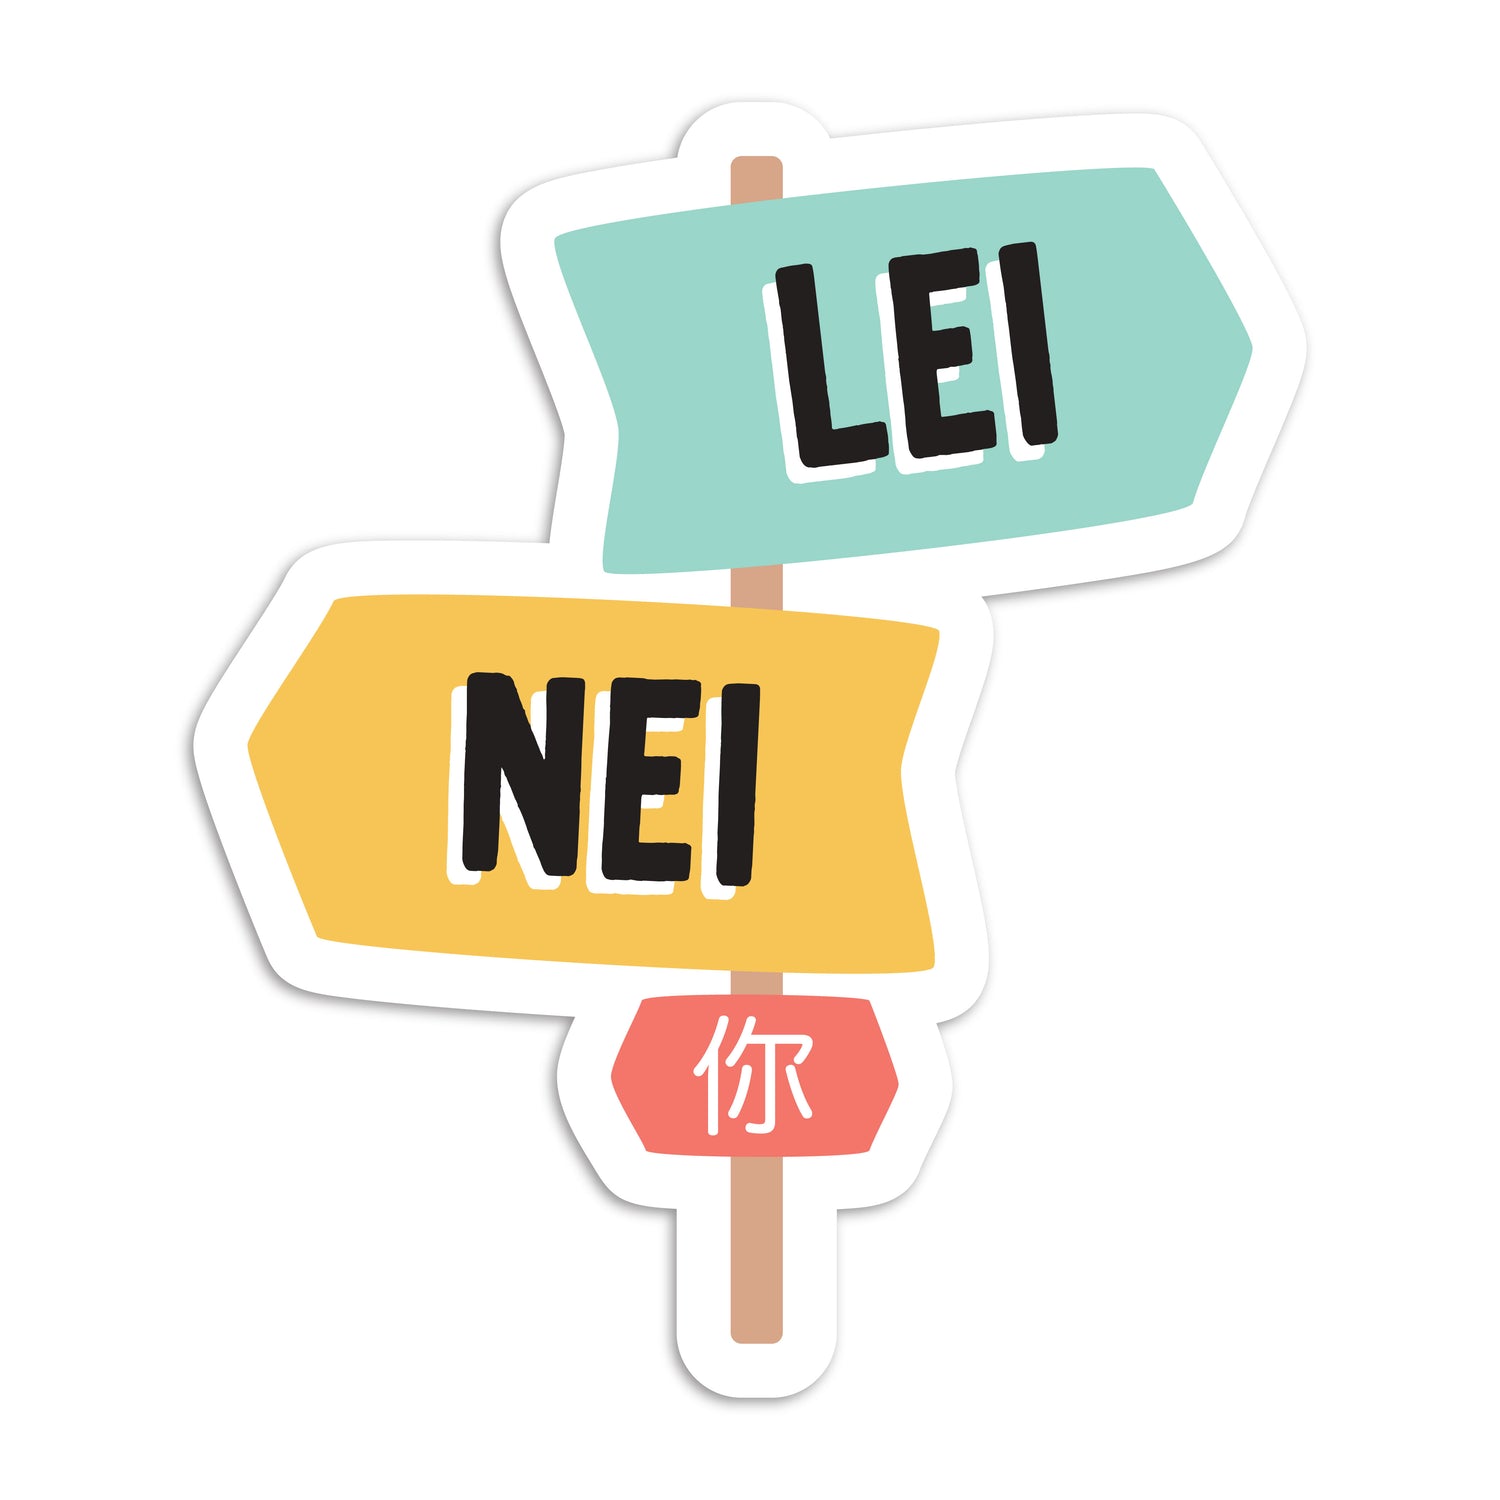 Lei (你) vs Nei (你) vinyl sticker by I&